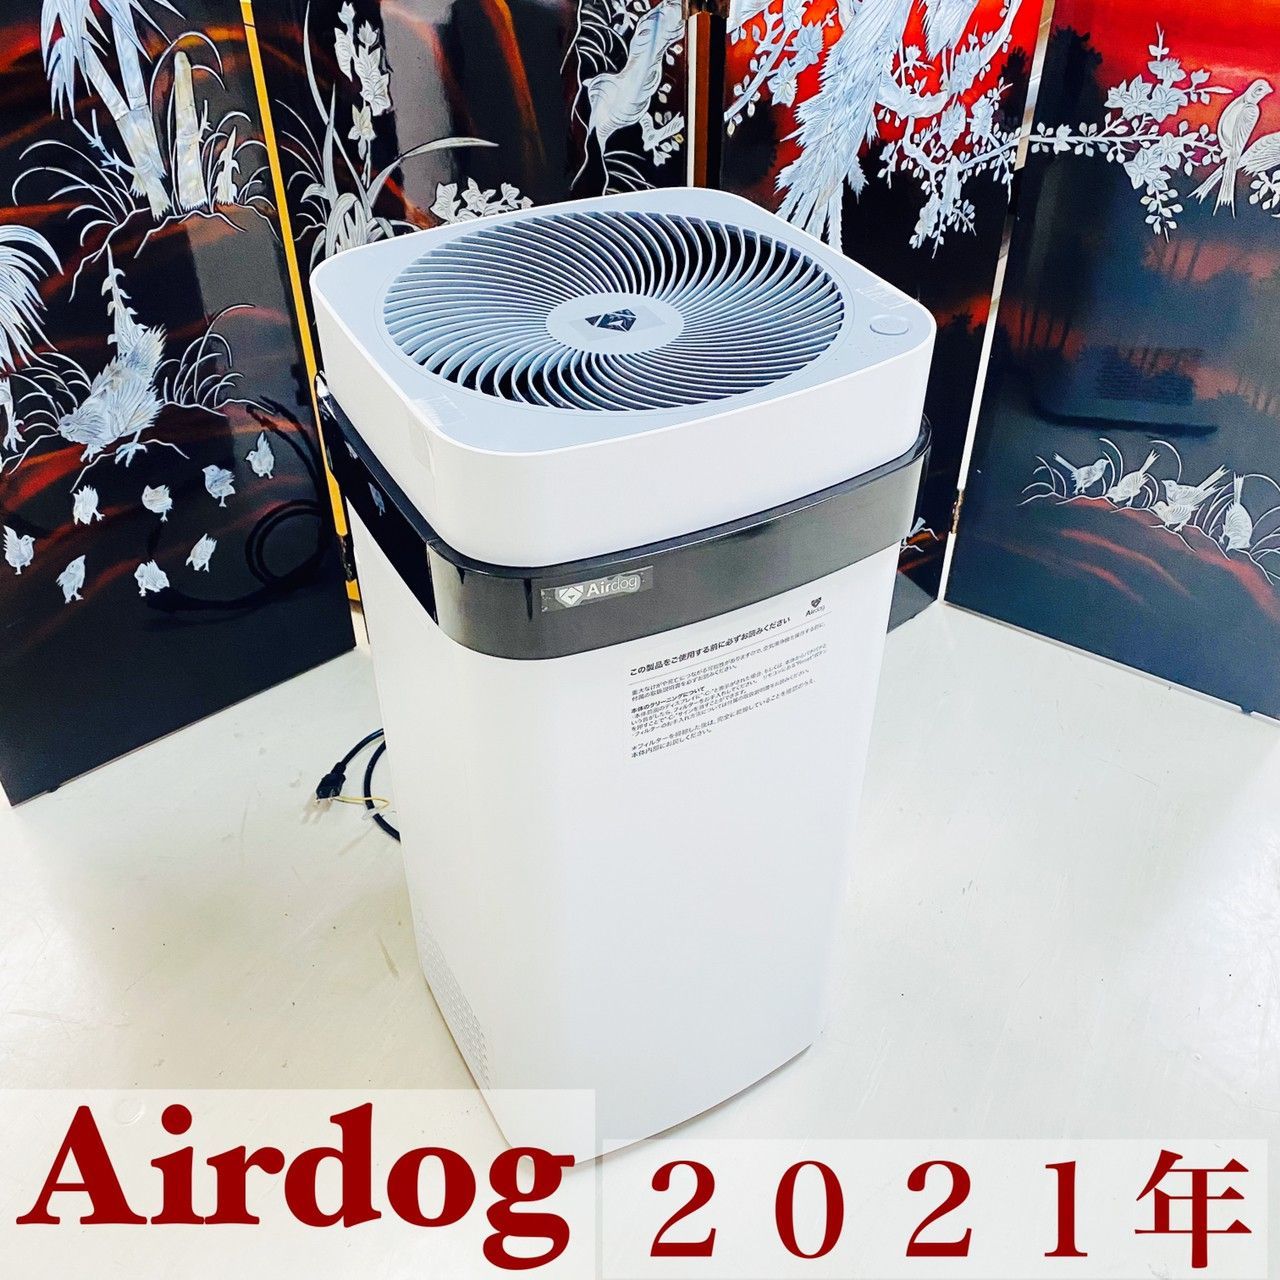 Airdog X5s 2021年製エアドッグ高性能空気清浄機【即購入OK】幼児のいる家庭